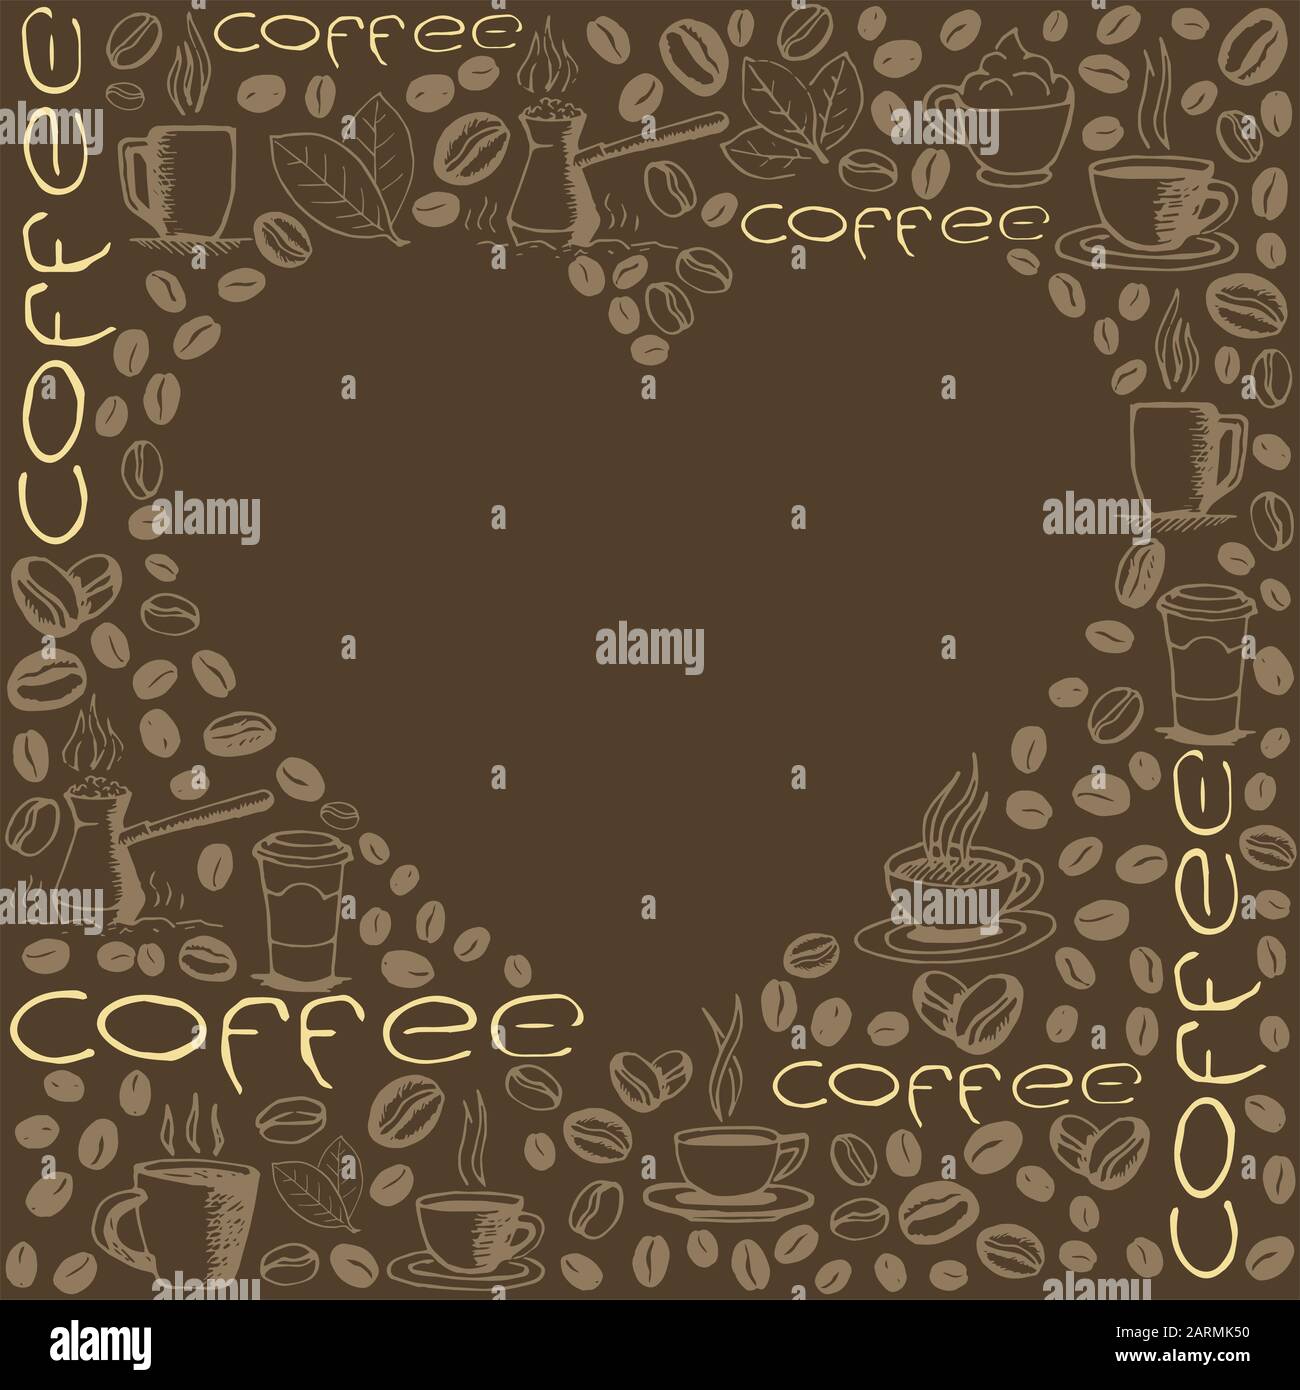 Kaffee dodelt im Hintergrund mit leerer Herzform. Handgezeichnetes, skizzenhaftes Symbolmuster. Vektor eps8-Abbildung. Stock Vektor